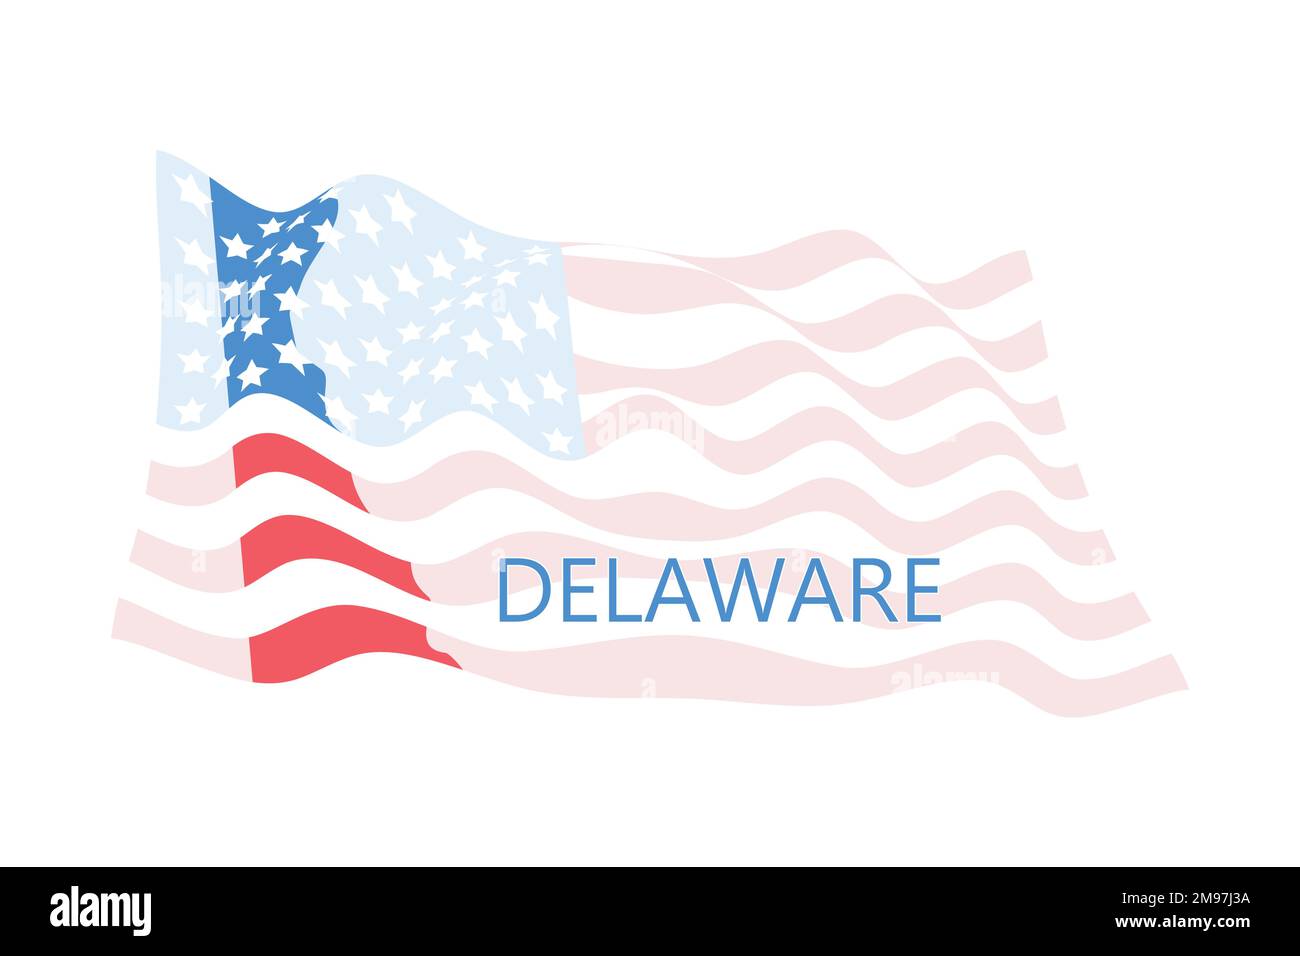 Forma della mappa dello stato del Delaware con bandiera americana, può essere utilizzata per gli stati uniti d'America giorno di indepenenza, nazionalismo, e patriottismo illustrazione, piano v Illustrazione Vettoriale